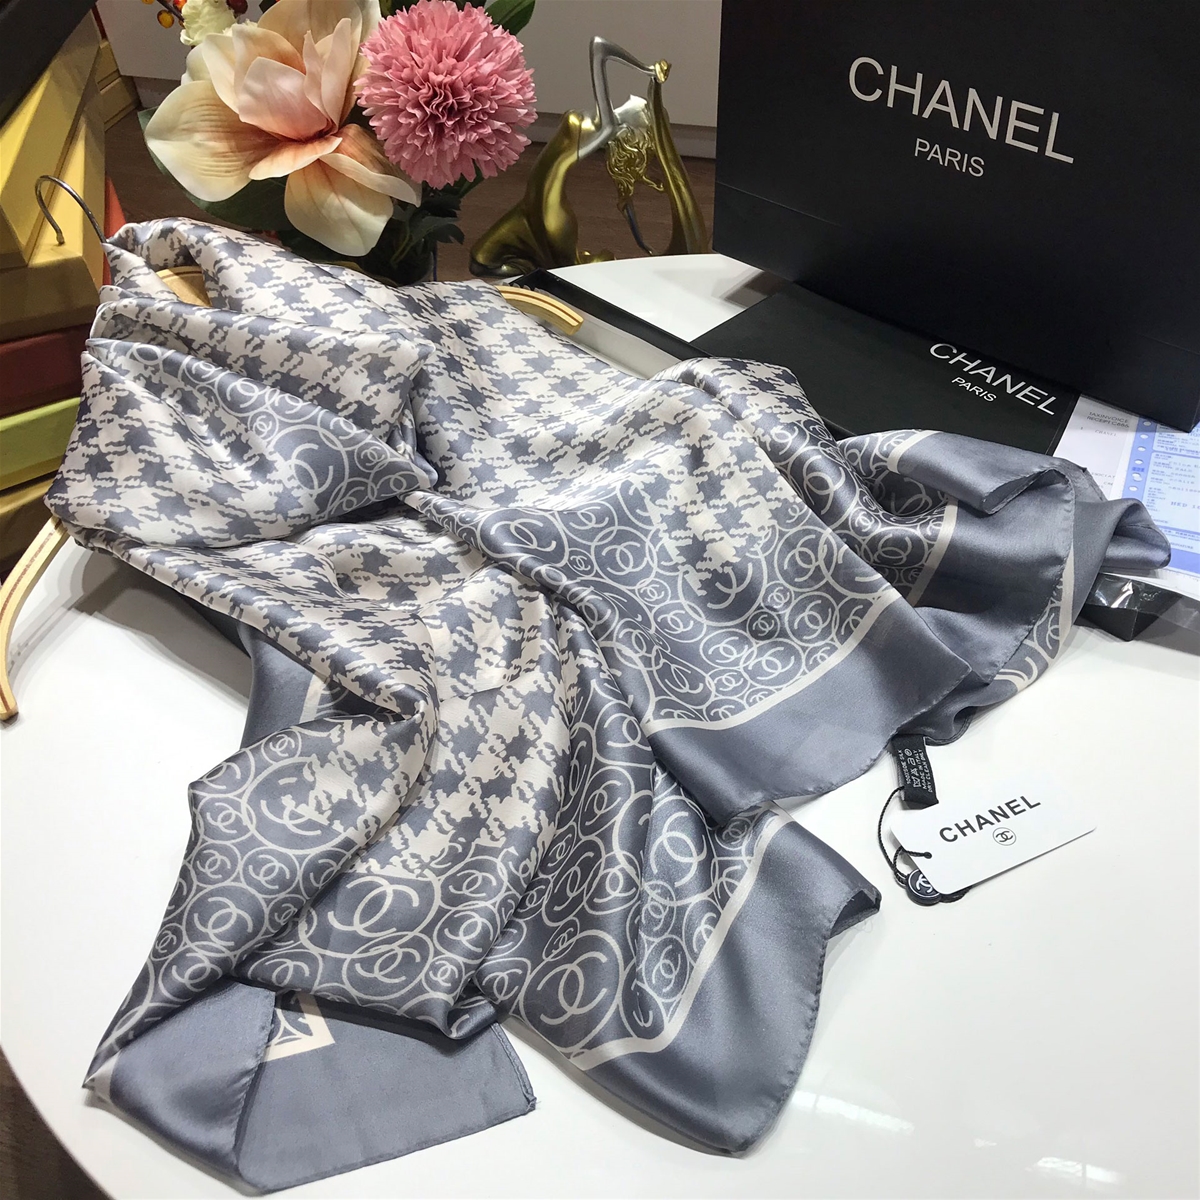 Khăn hiệu Chanel nữ kết hợp màu nhã nhặn